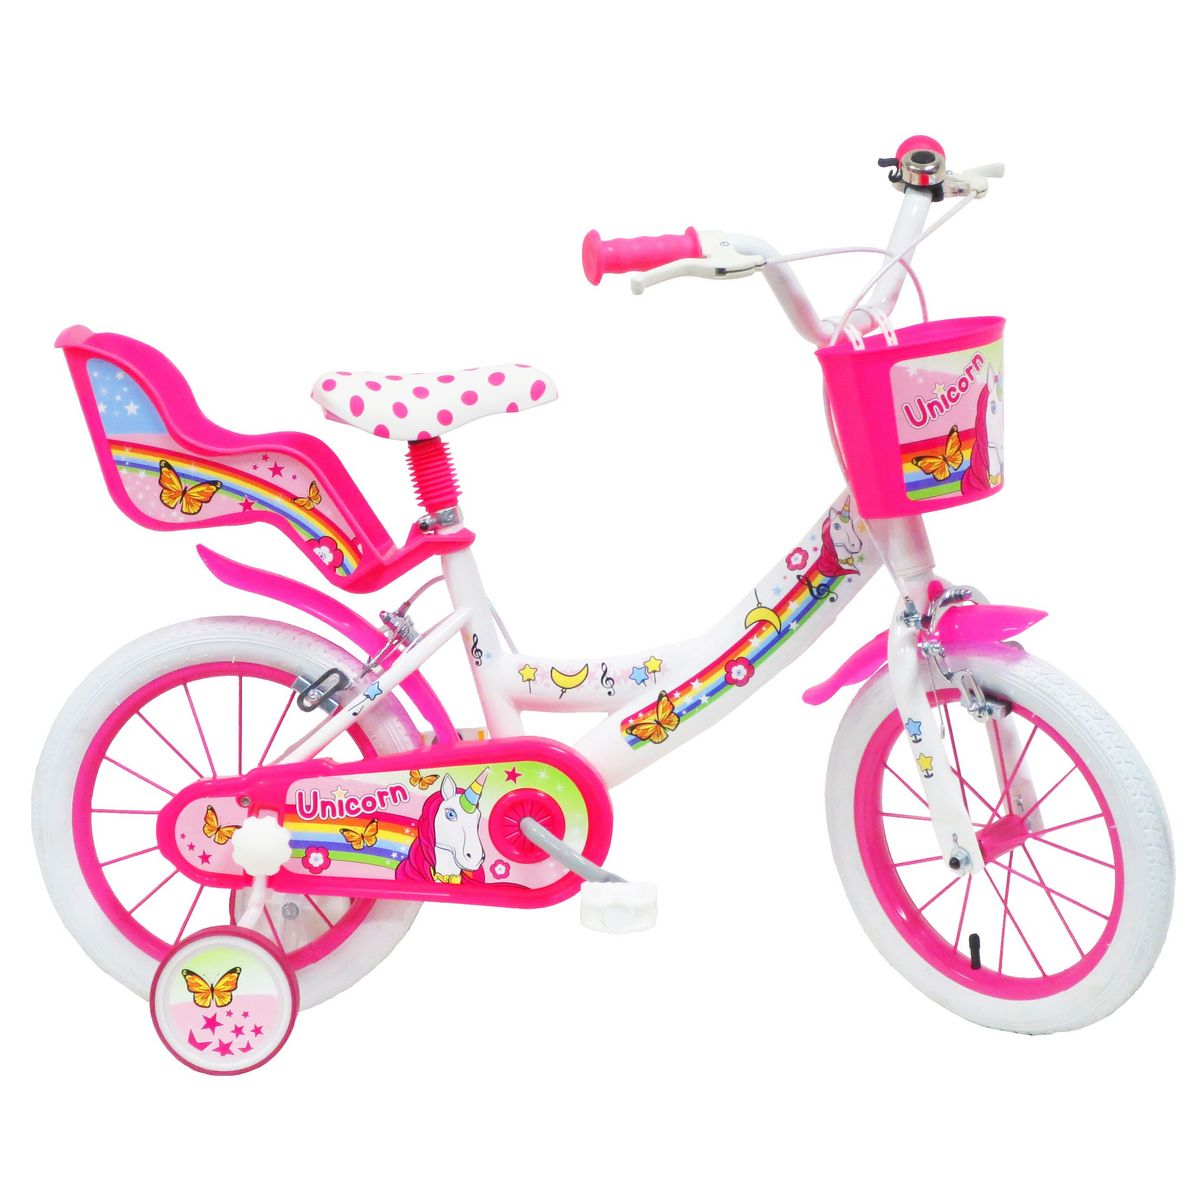  Vélo 14 Fille LICORNE/UNICORN pour enfant de 4 à 6 ans avec stabilisateurs à molettes